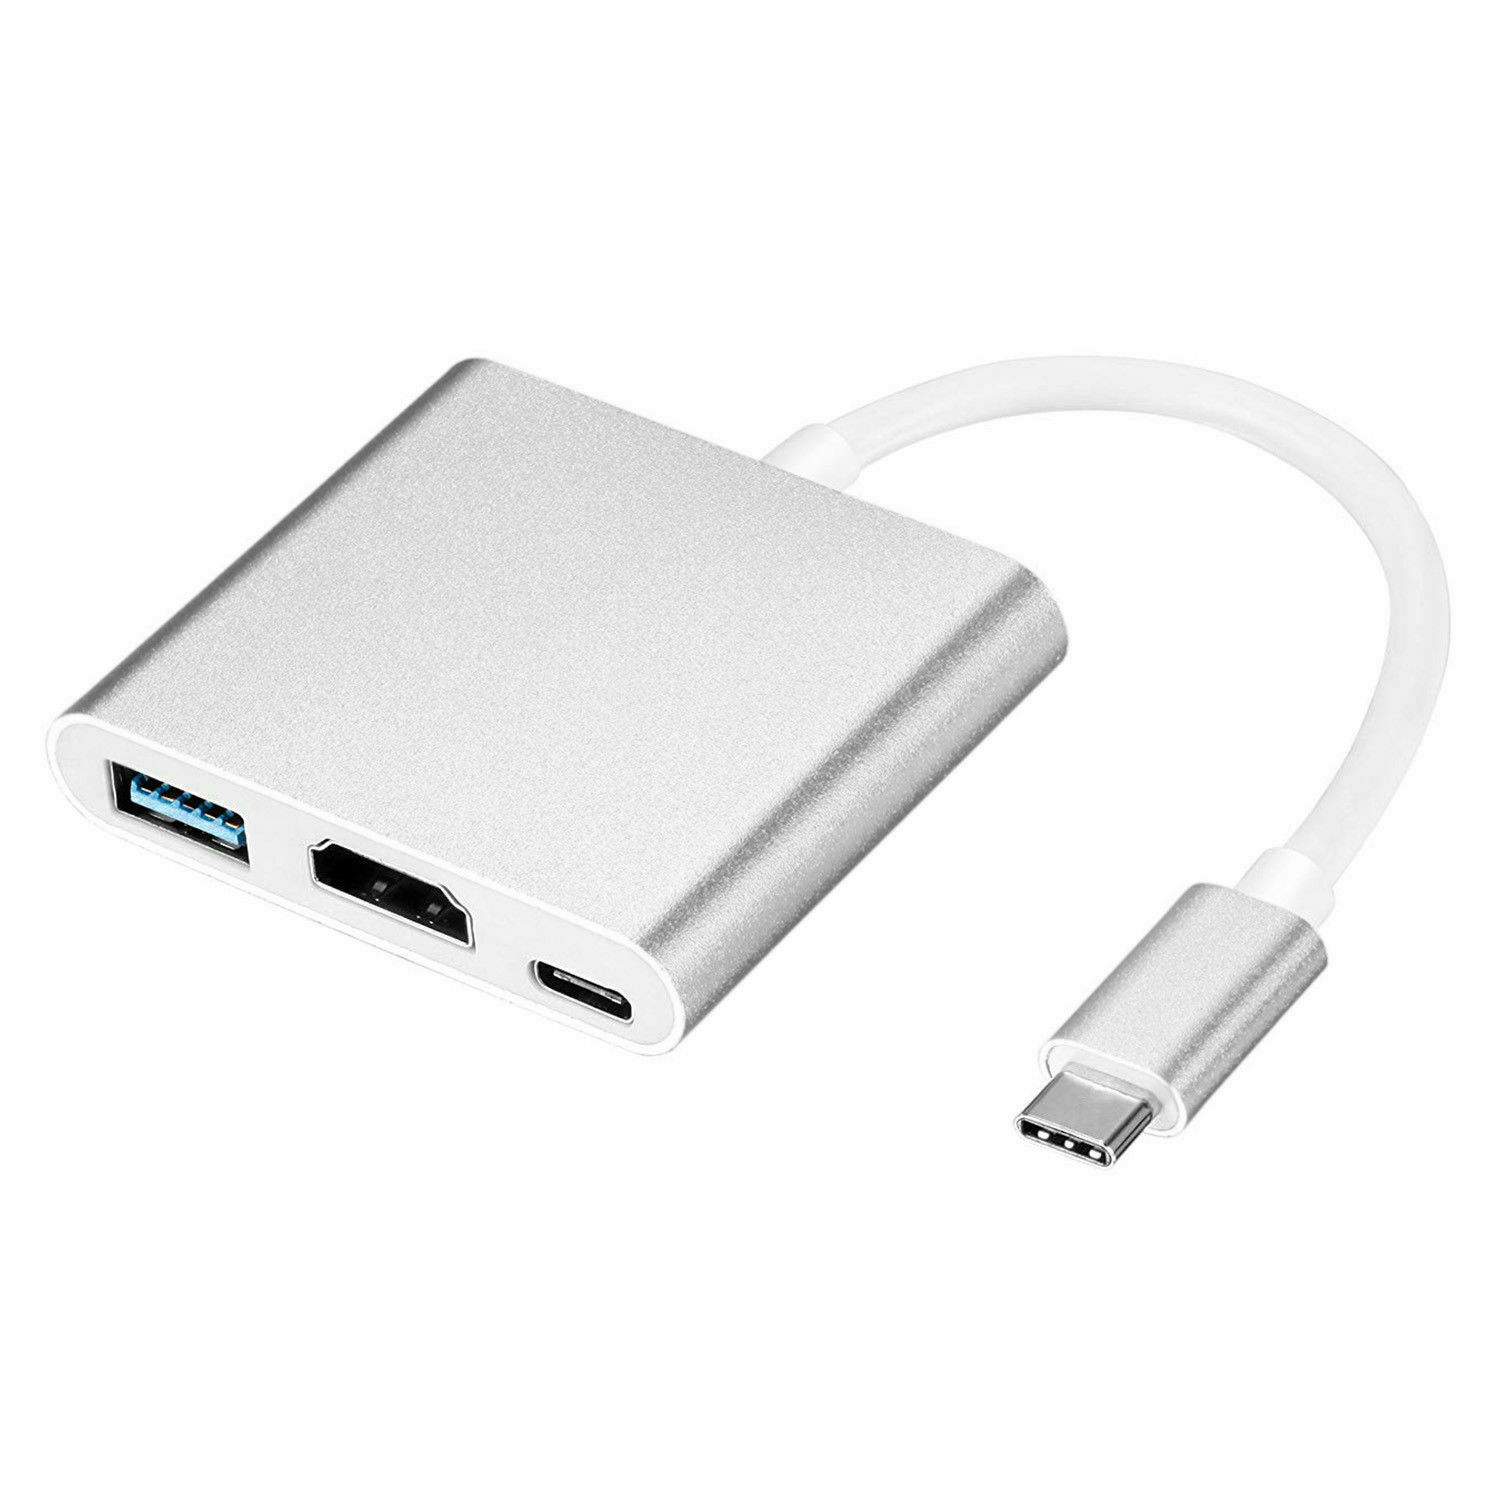 4K USBC 3.1 Hub Converter USB C Type USB 3.0/HDMI/Type C Vrouwelijke Oplader AV Adapter voor Macbook/Dell XPS 13/Matebook Laptops: Silver